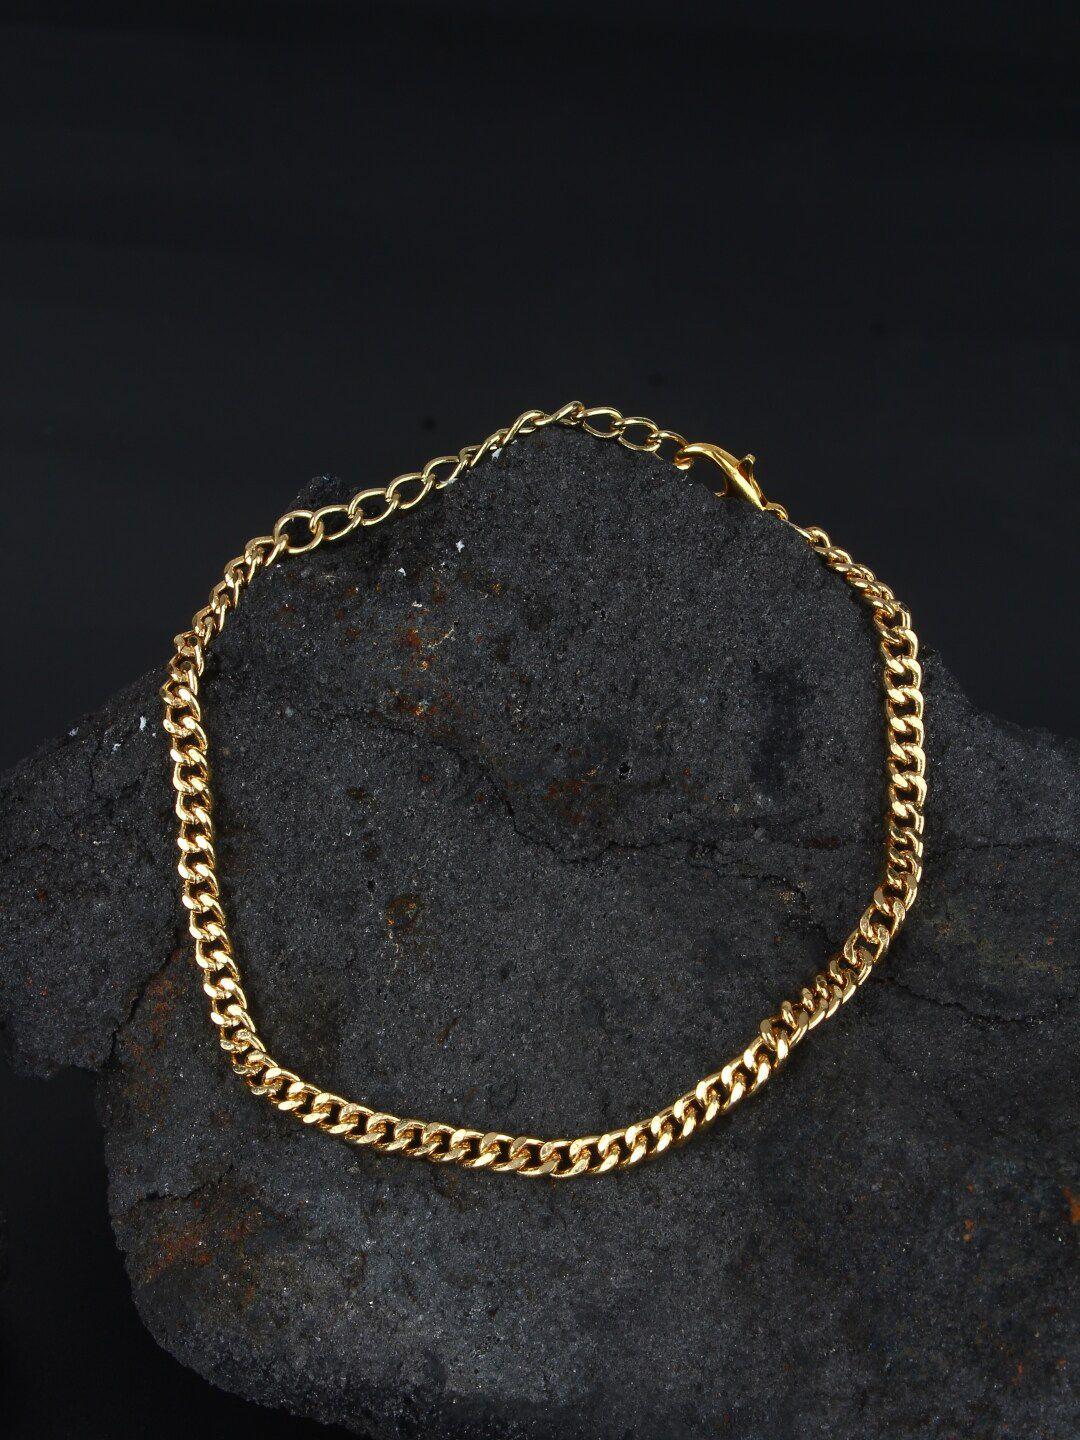 stylecast x kpop gold-plated charm bracelet